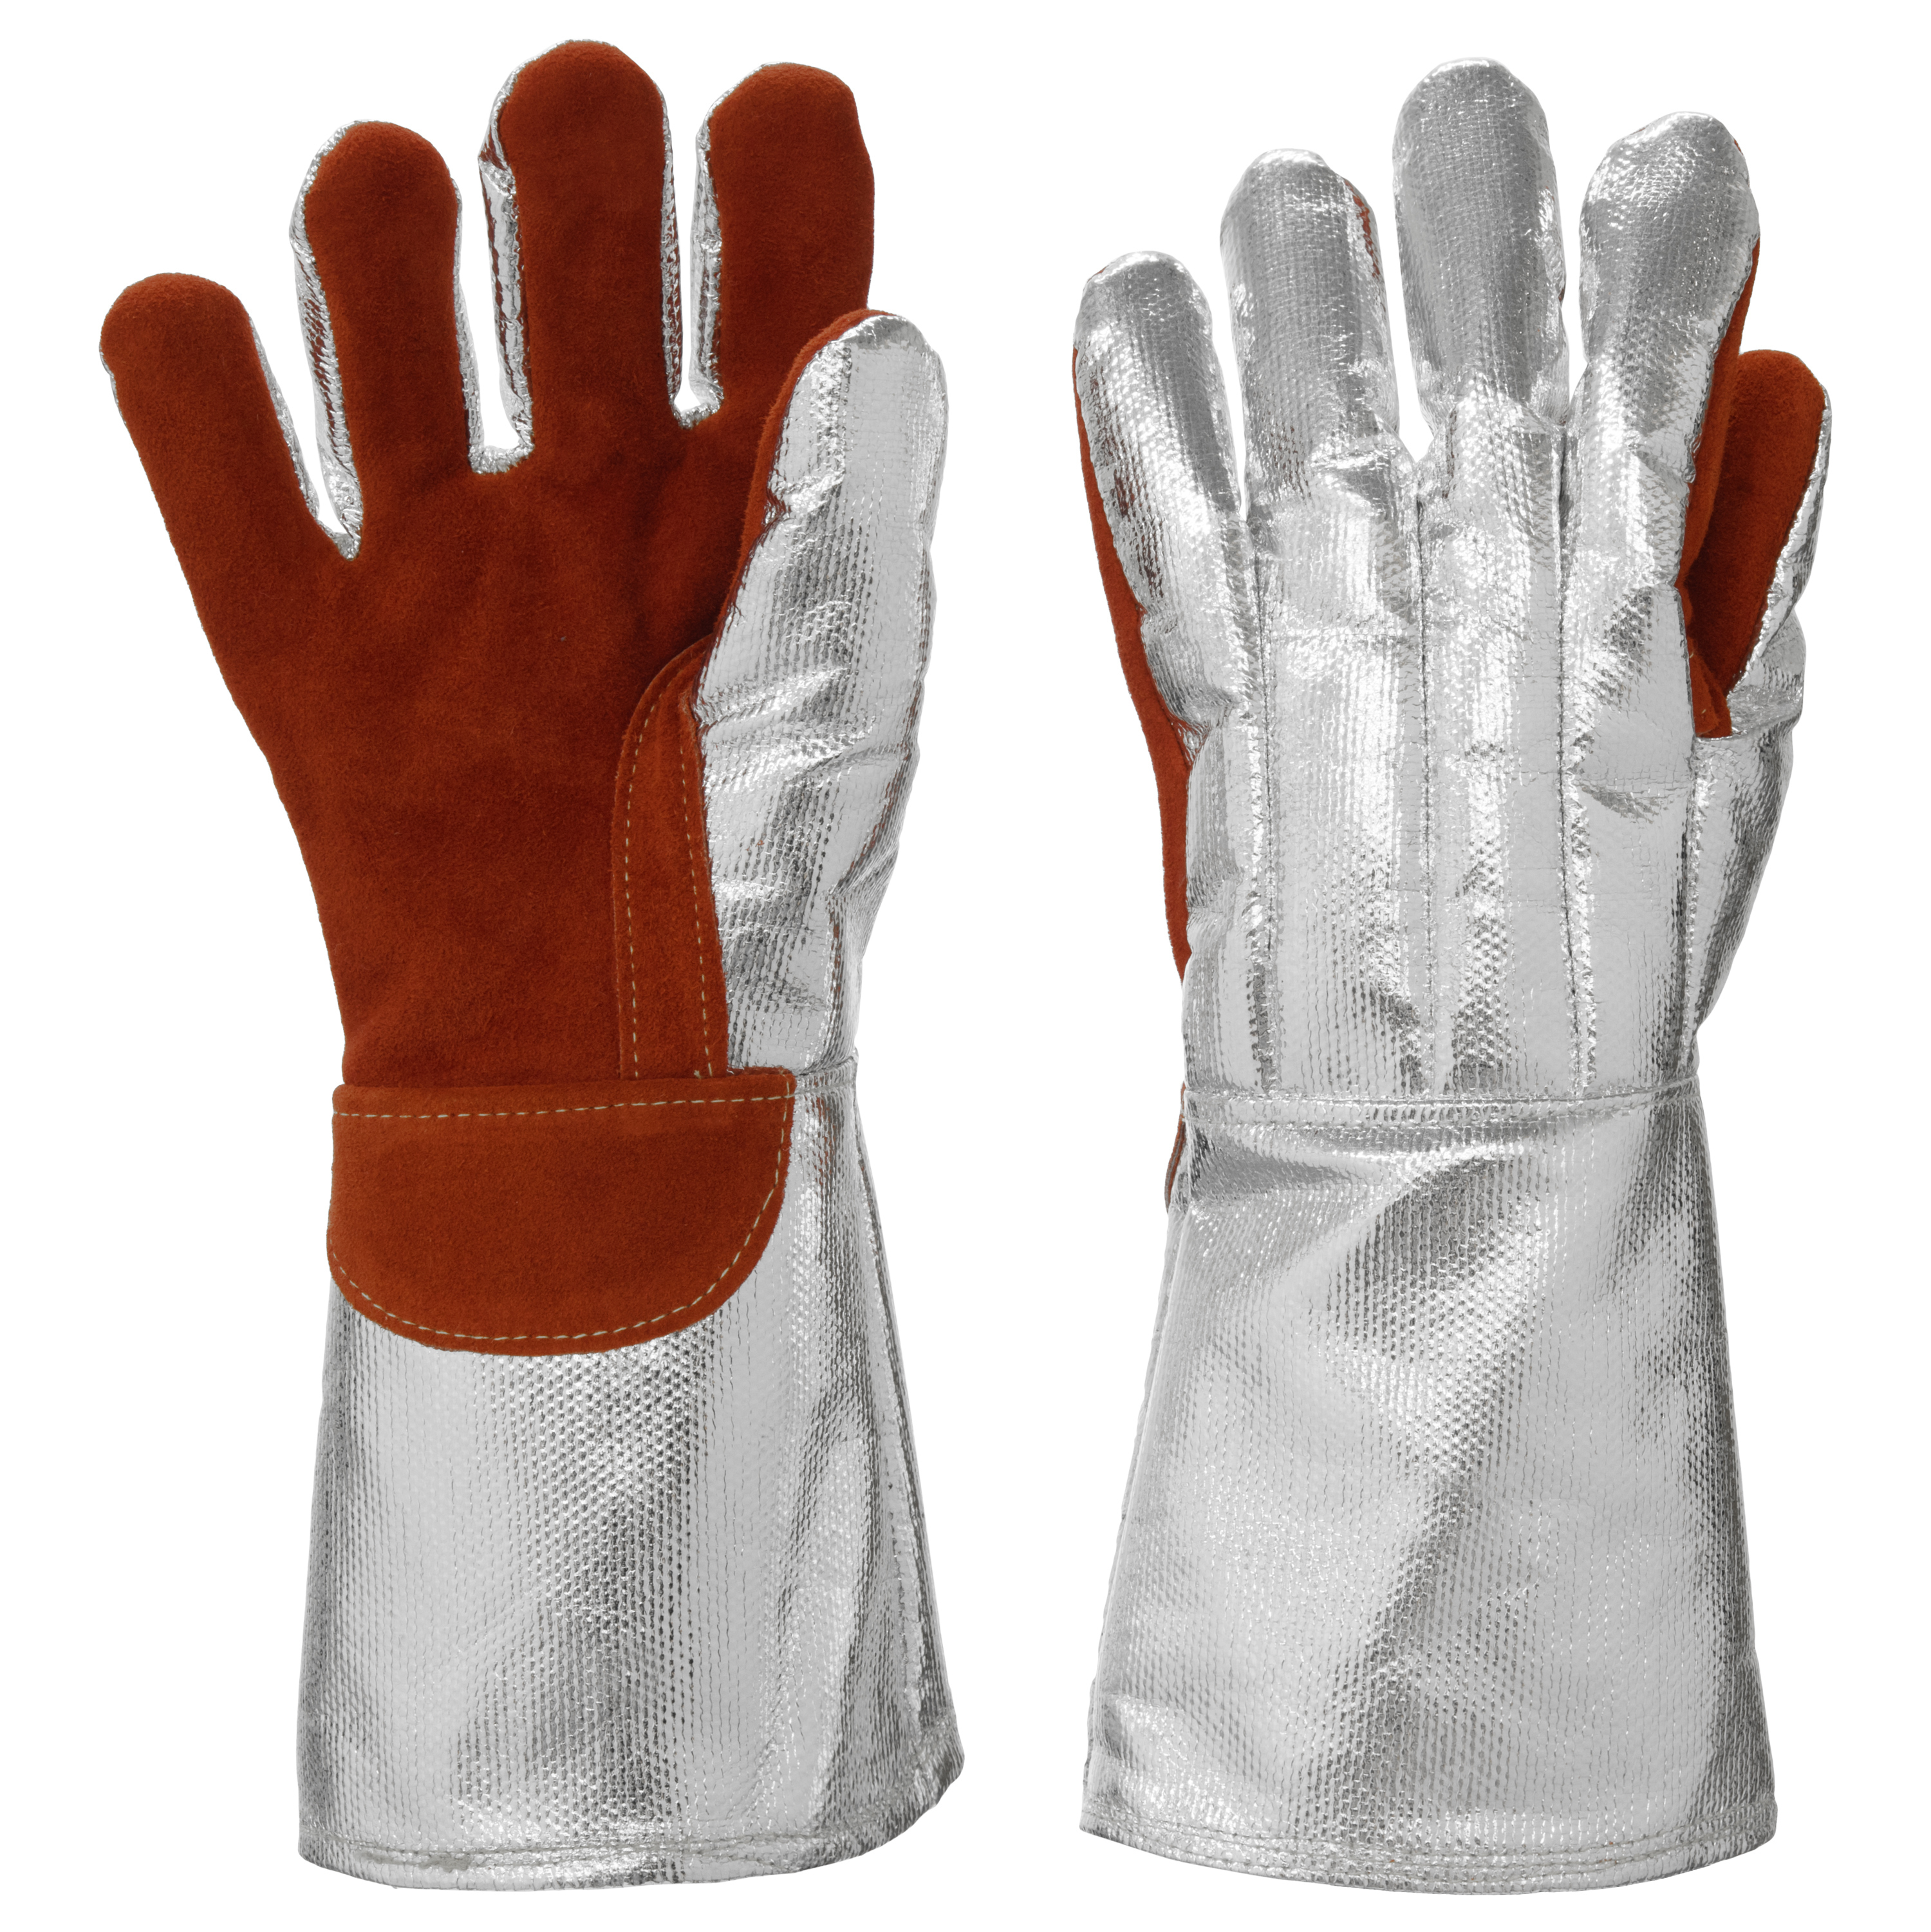 Aluminized gloves 